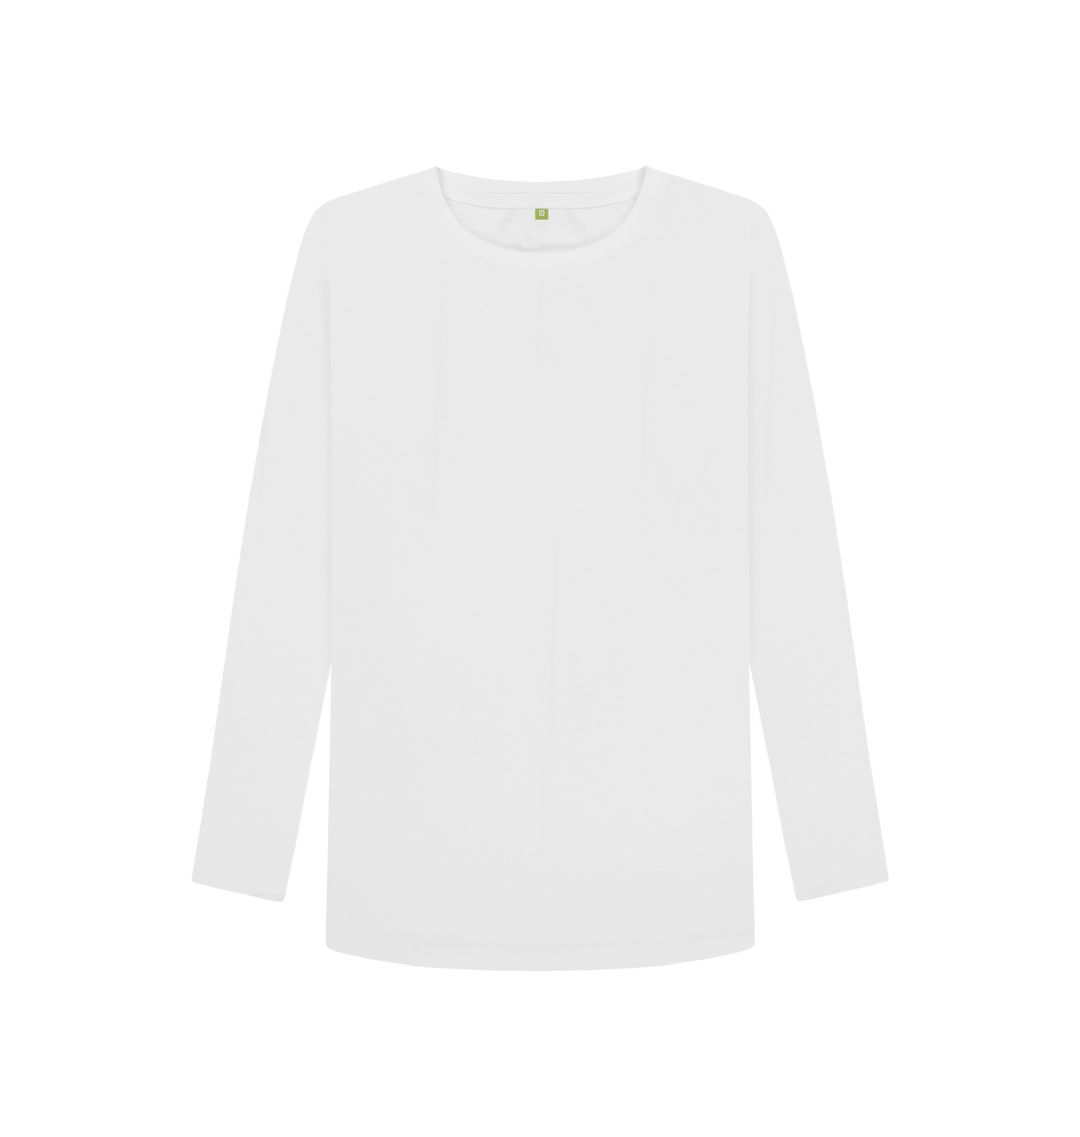 White Women's organic cotton long sleeve t-shirt